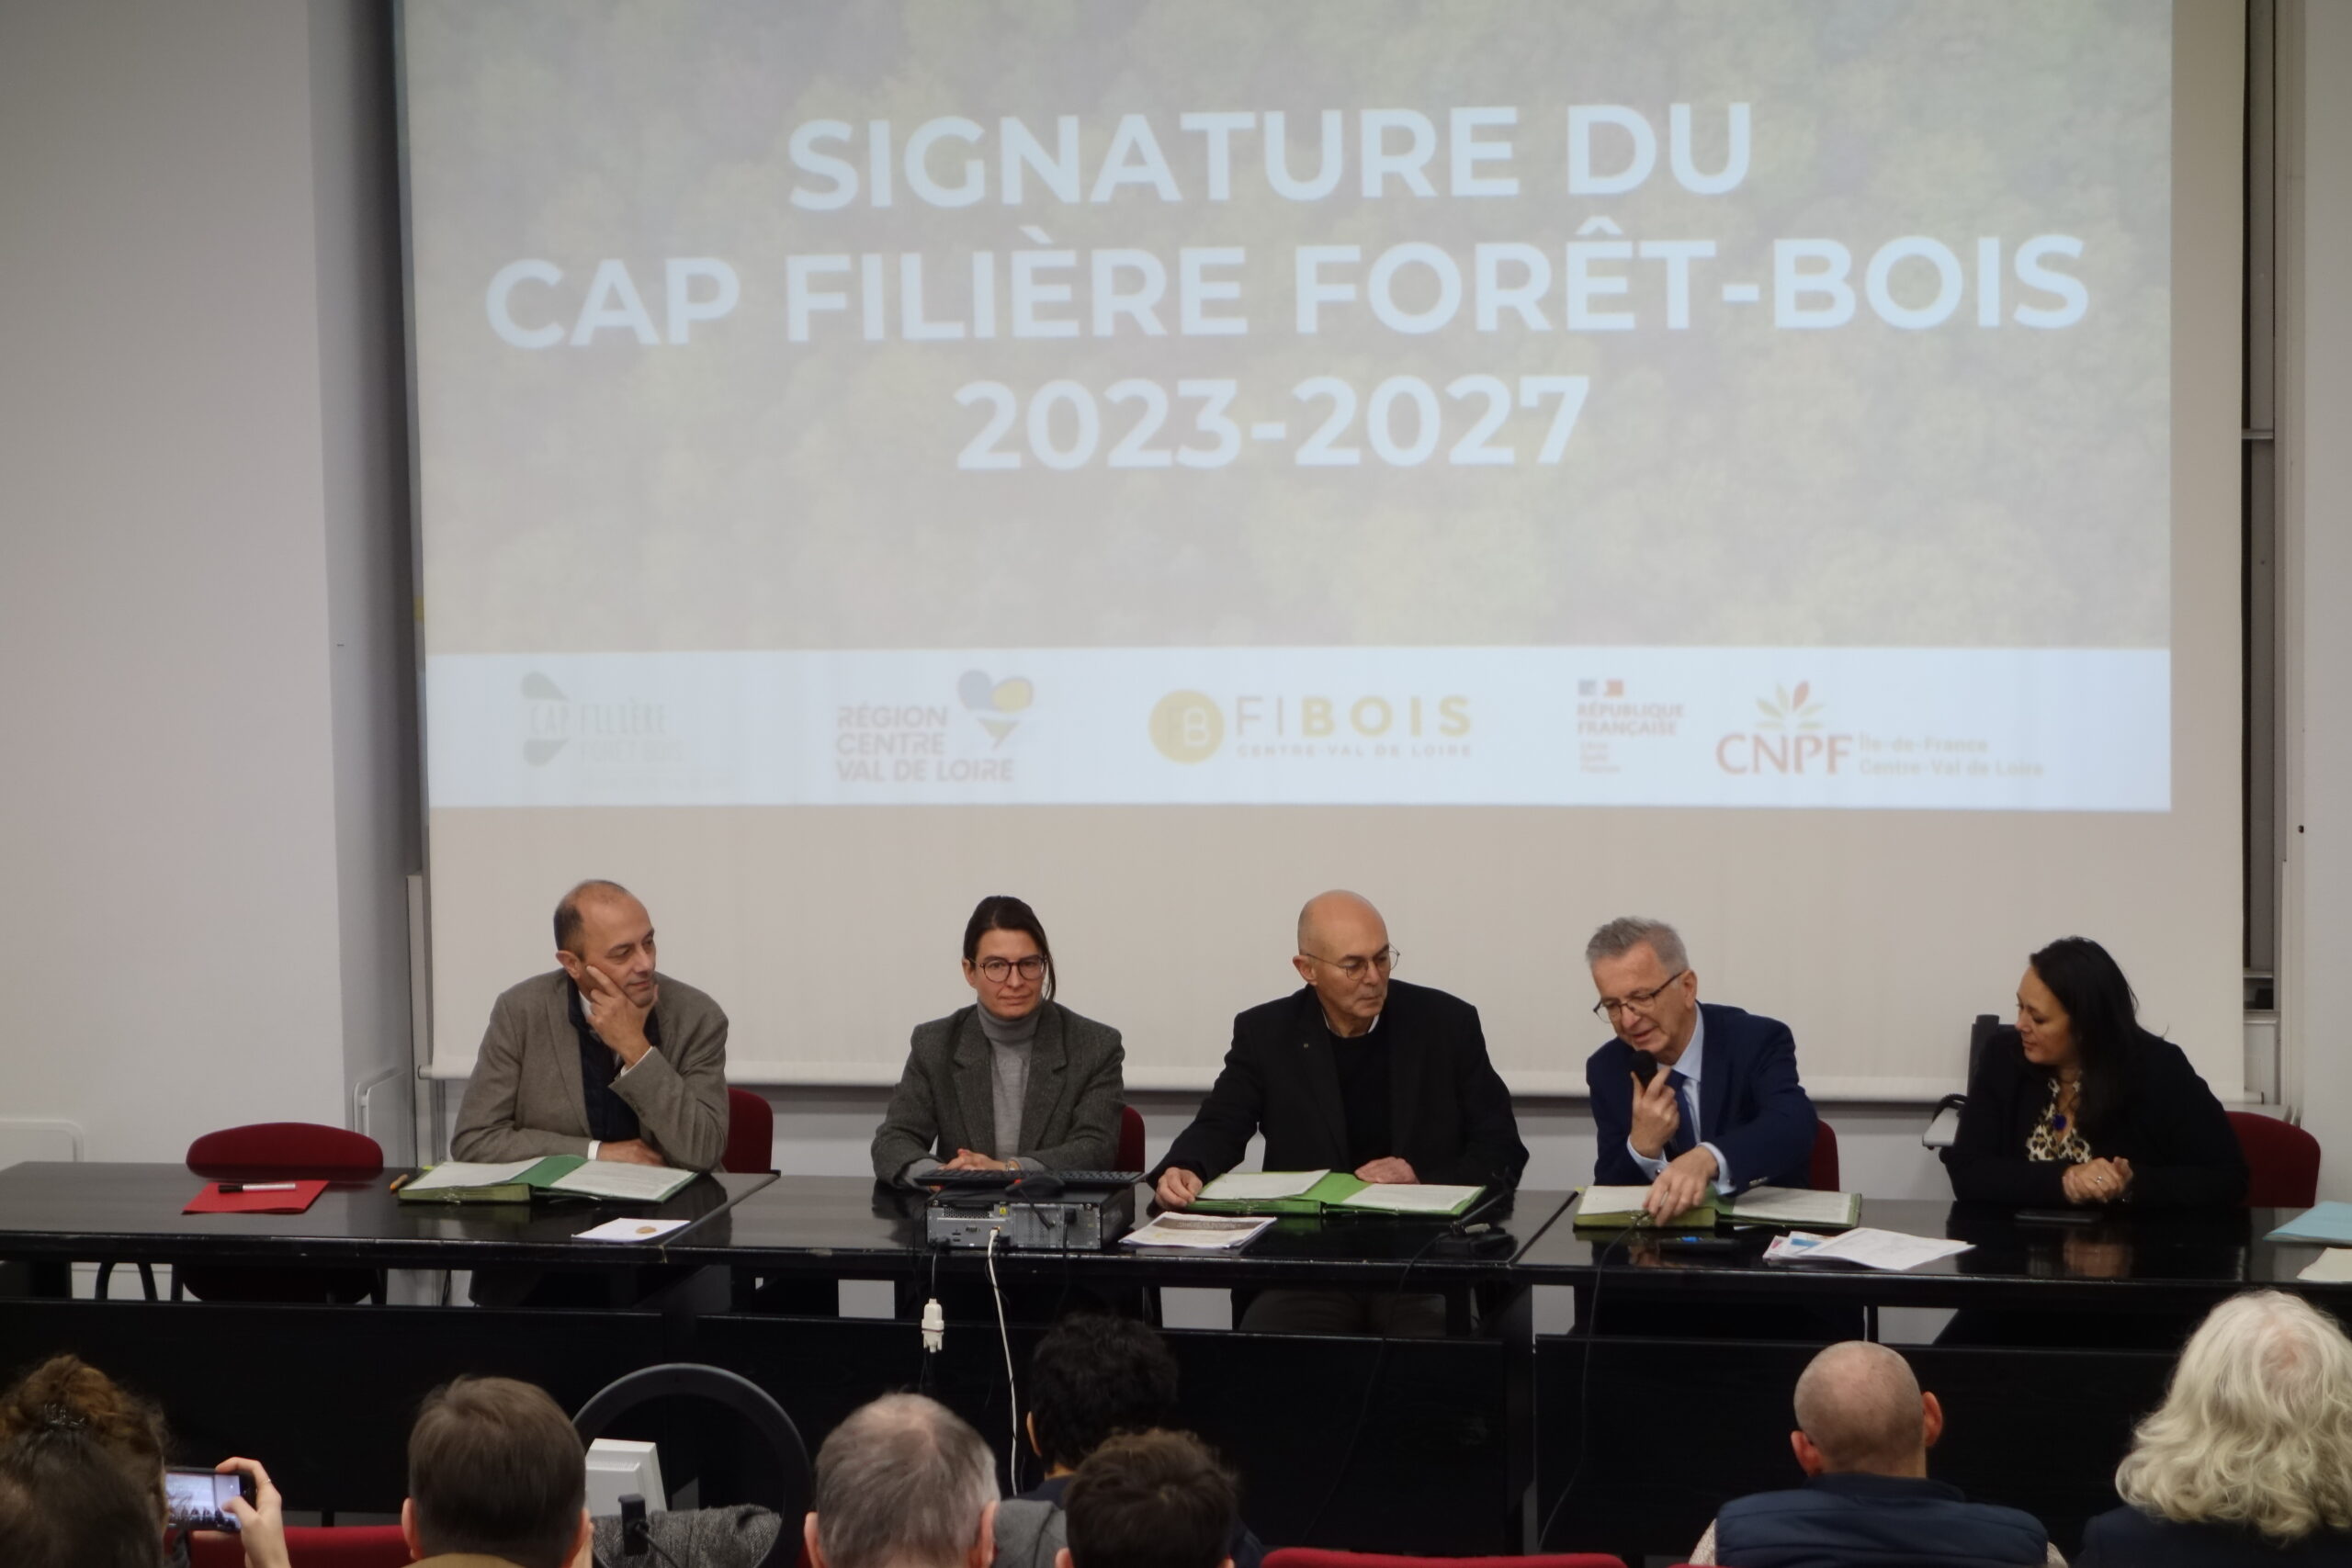 Signature du CAP Filière forêt-bois 2023-2027